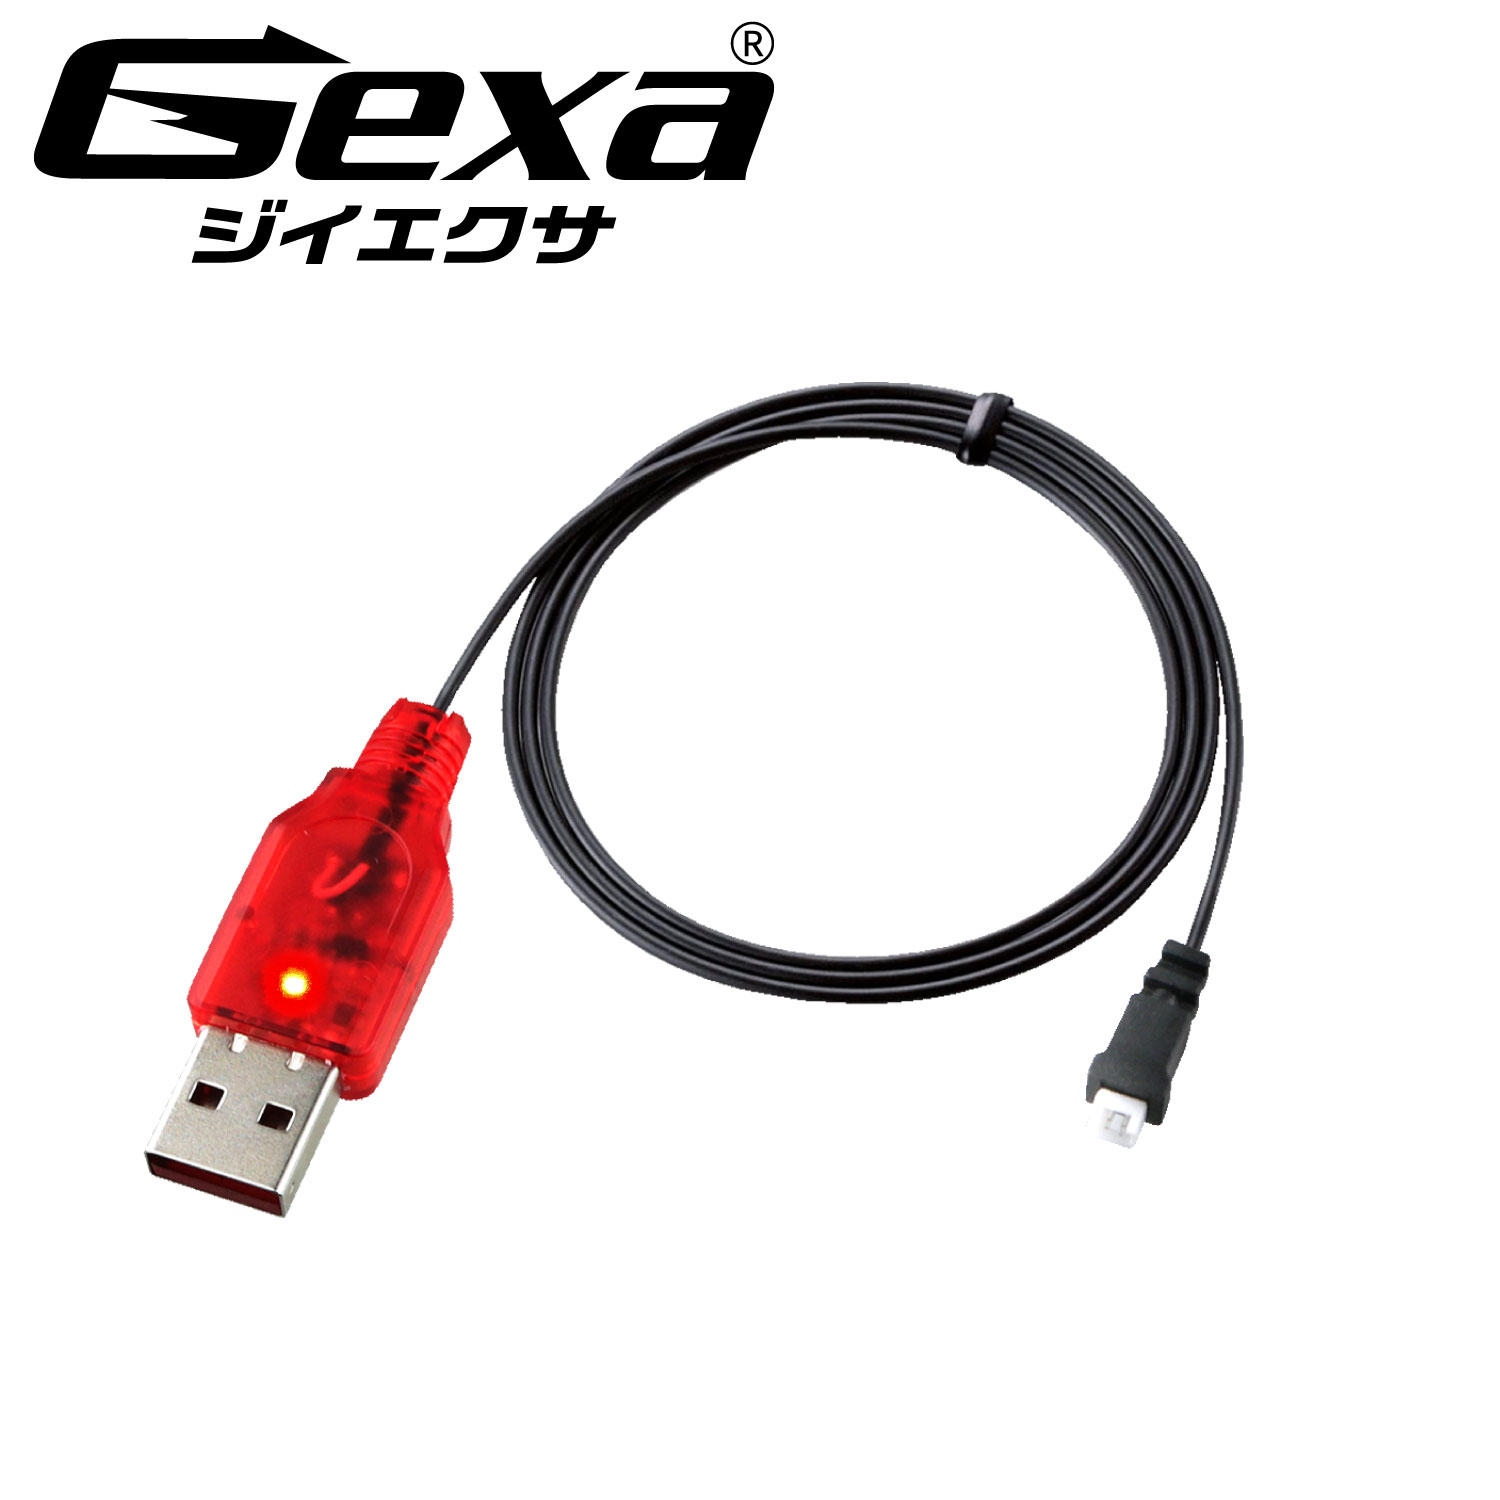 リチウムポリマー 充電器 充電状態ランプ 電流逆流防止 リポ バッテリー GA-029R ジイエクサ(Gexa) コネクタの極性をご確認ください